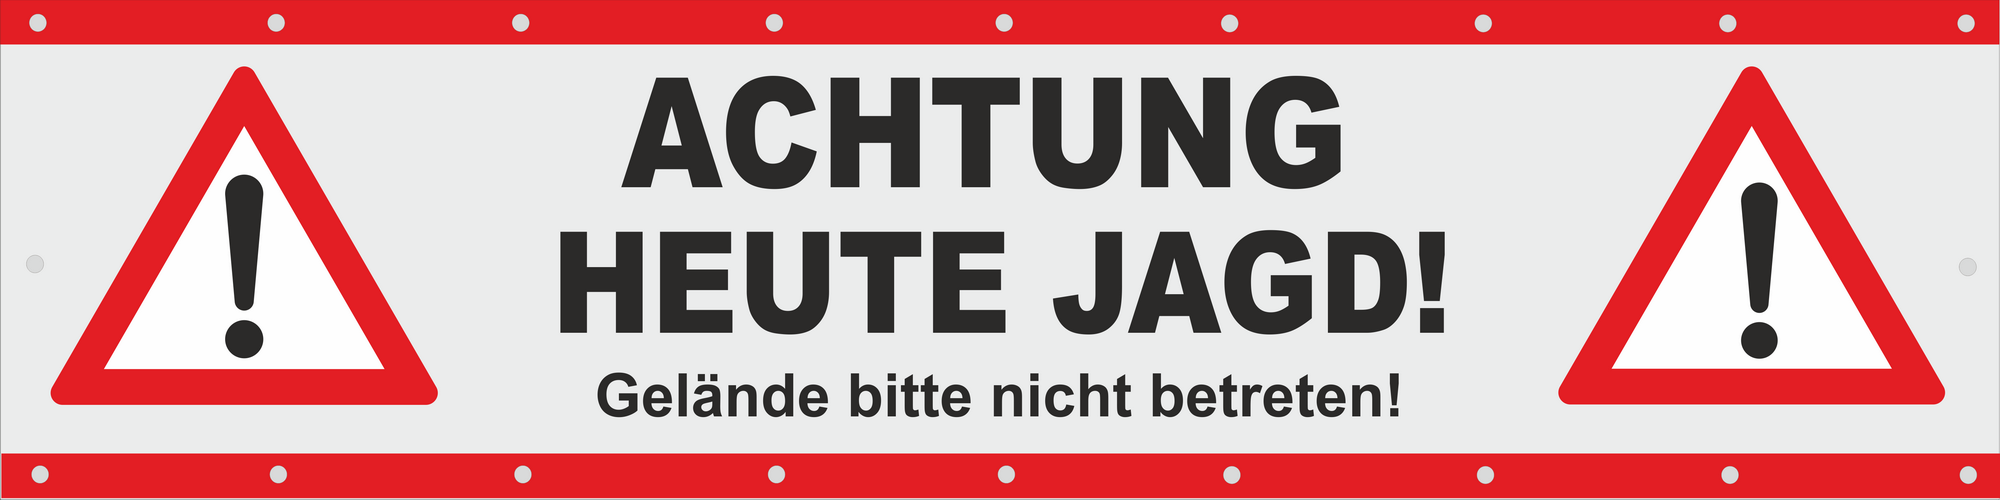 Banner Achtung Jagd Jagdbetrieb Vorsicht Treibjagd 